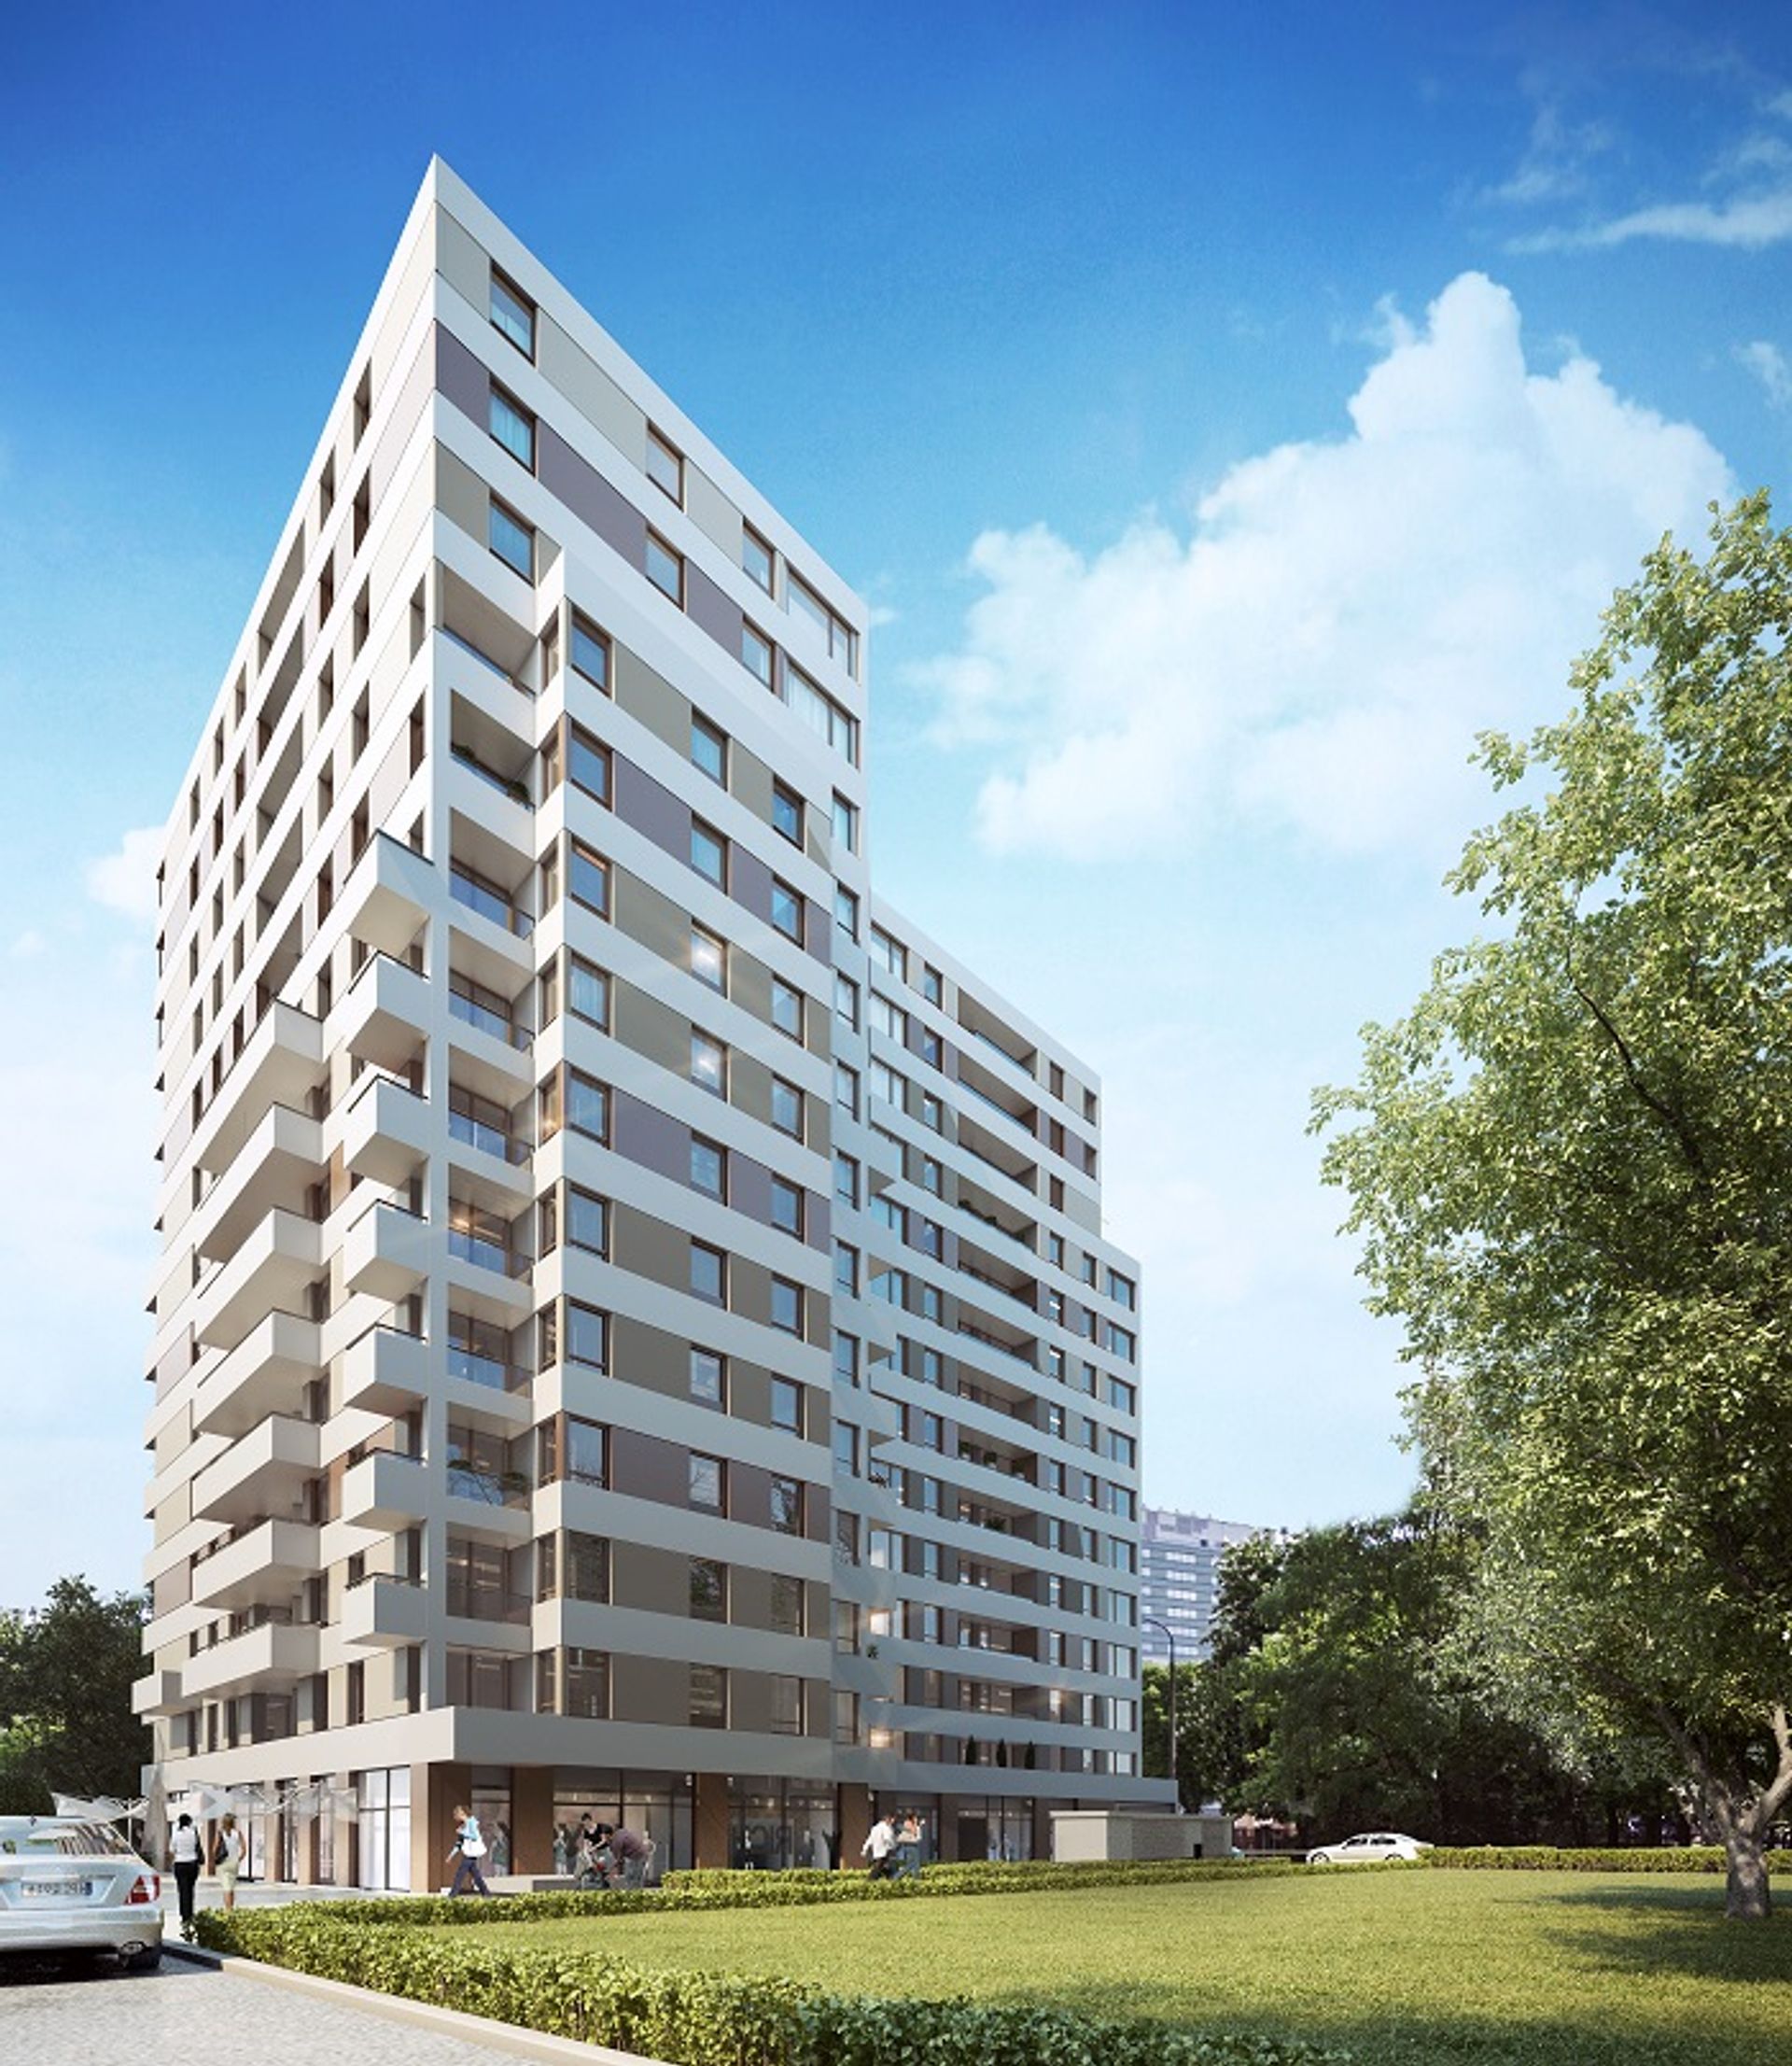  Matexi Polska zawiera pierwszą w Polsce transakcję sprzedaży budynku mieszkaniowego na rzecz zagranicznego funduszu inwestycyjnego. Nabywcą budynku „Apartamenty Pereca” jest fundusz Bouwfonds. 